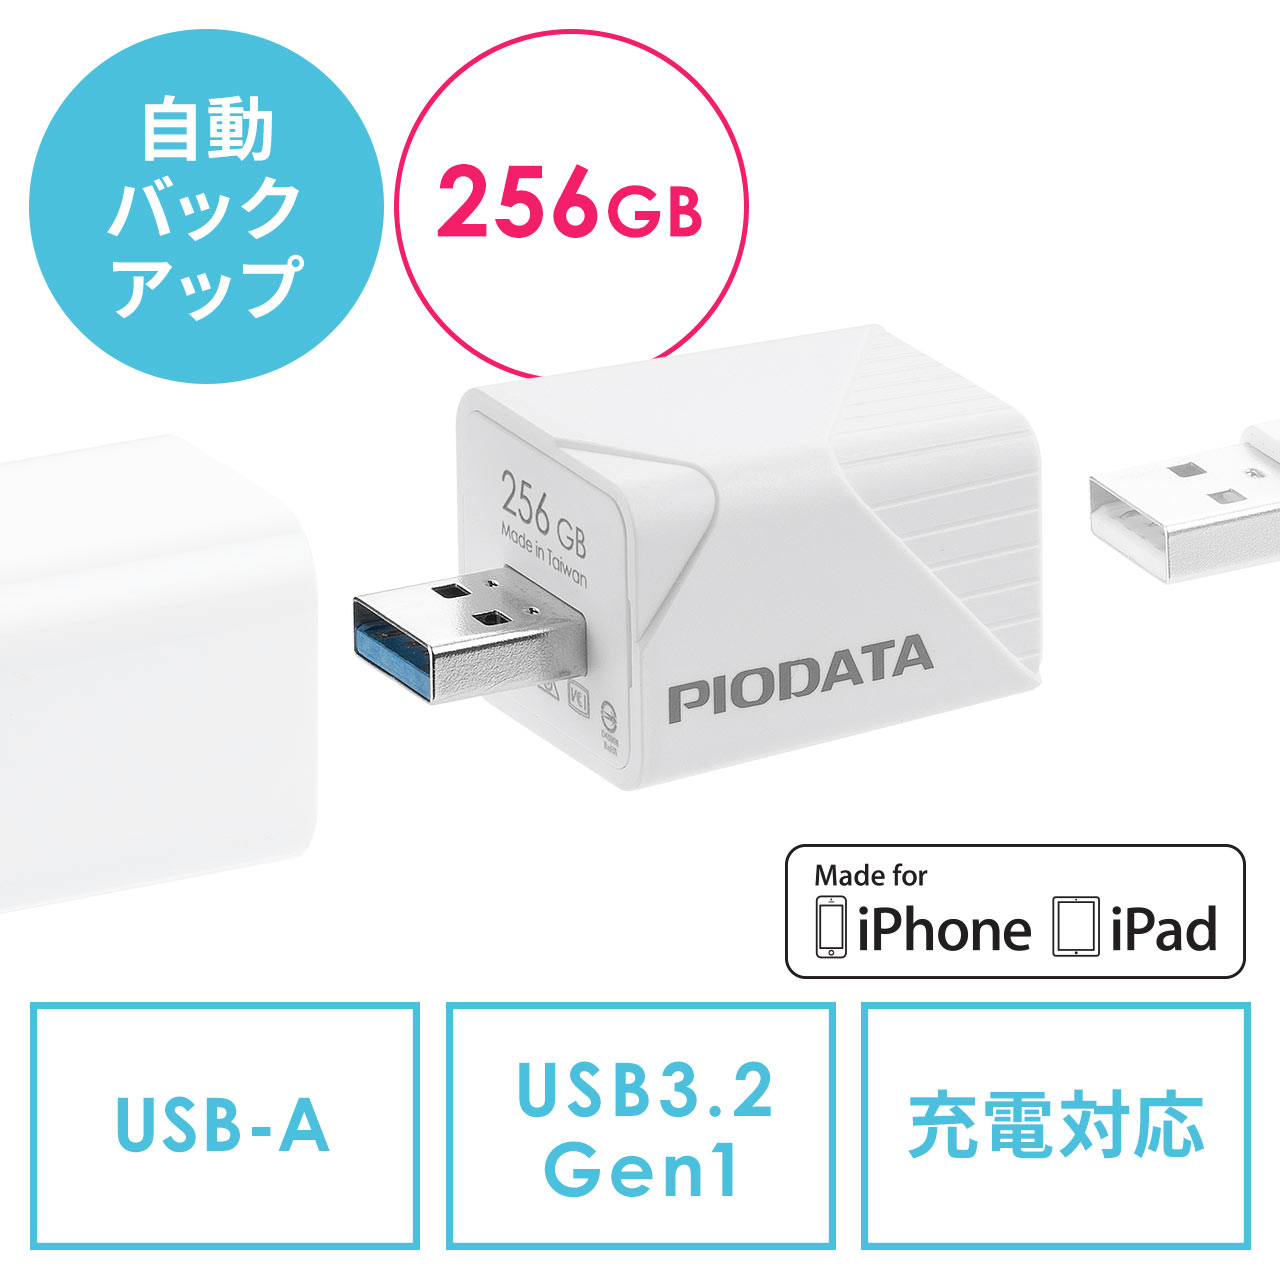 iPhone iPad バックアップ USBメモリ 256GB MFi認証  USB3.2 Gen1(USB3.1/3.0) 600-IPLA256GB3